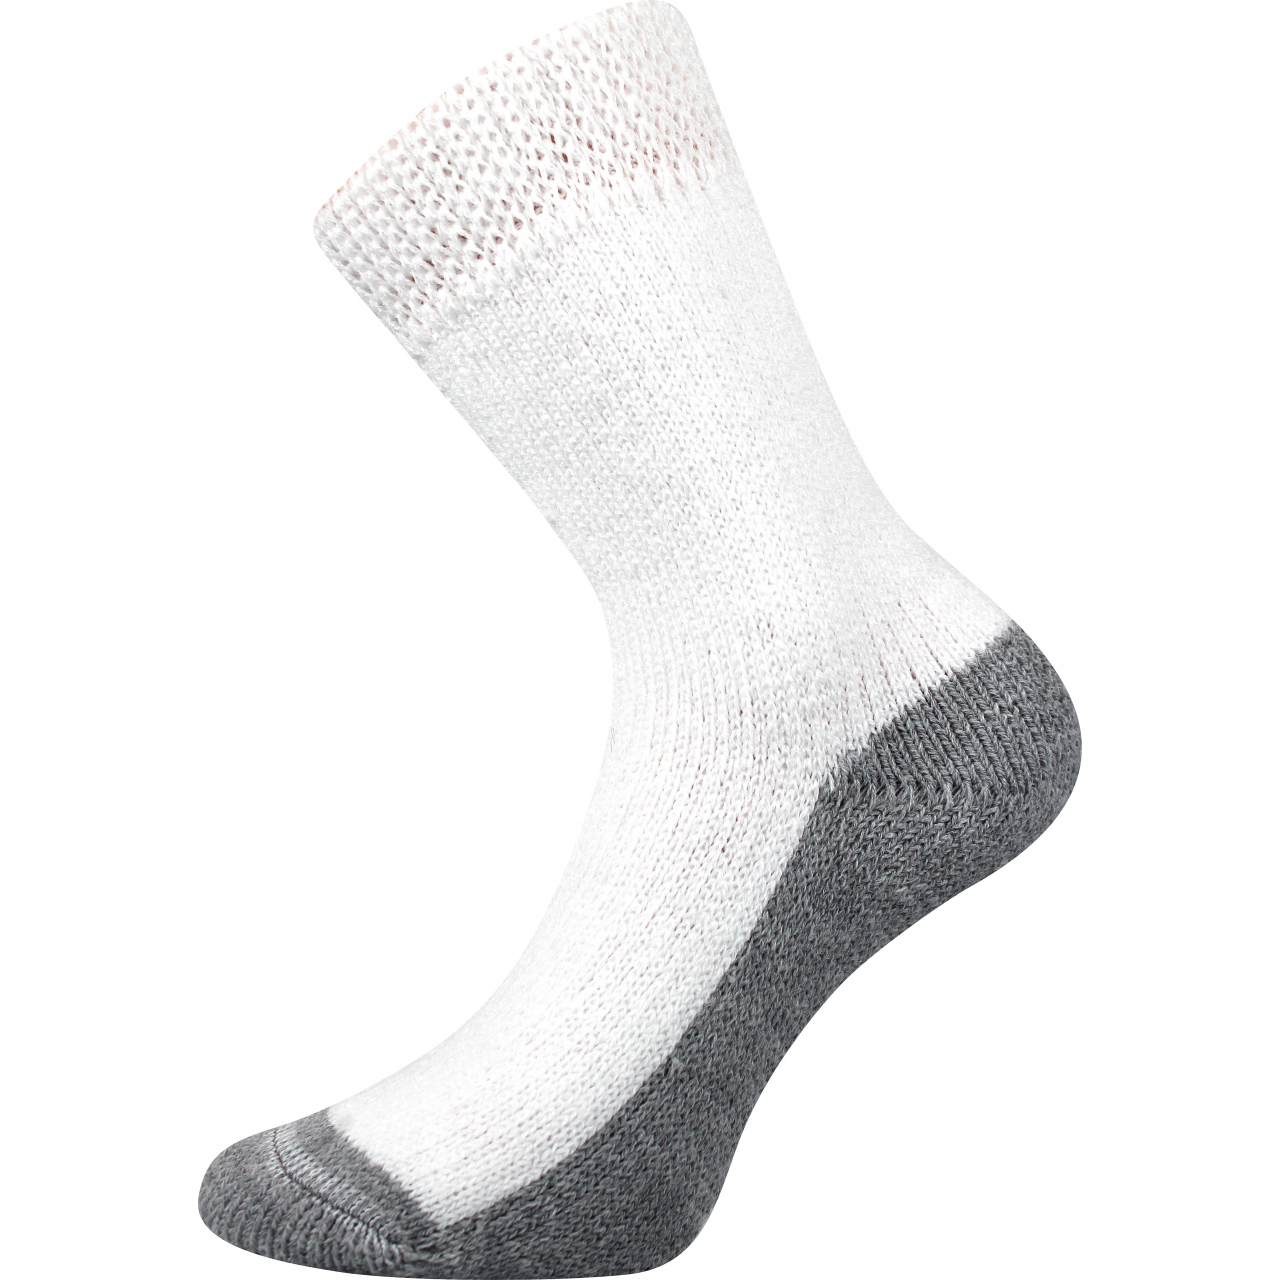 Ponožky unisex Boma Spací - bílé, 35-38